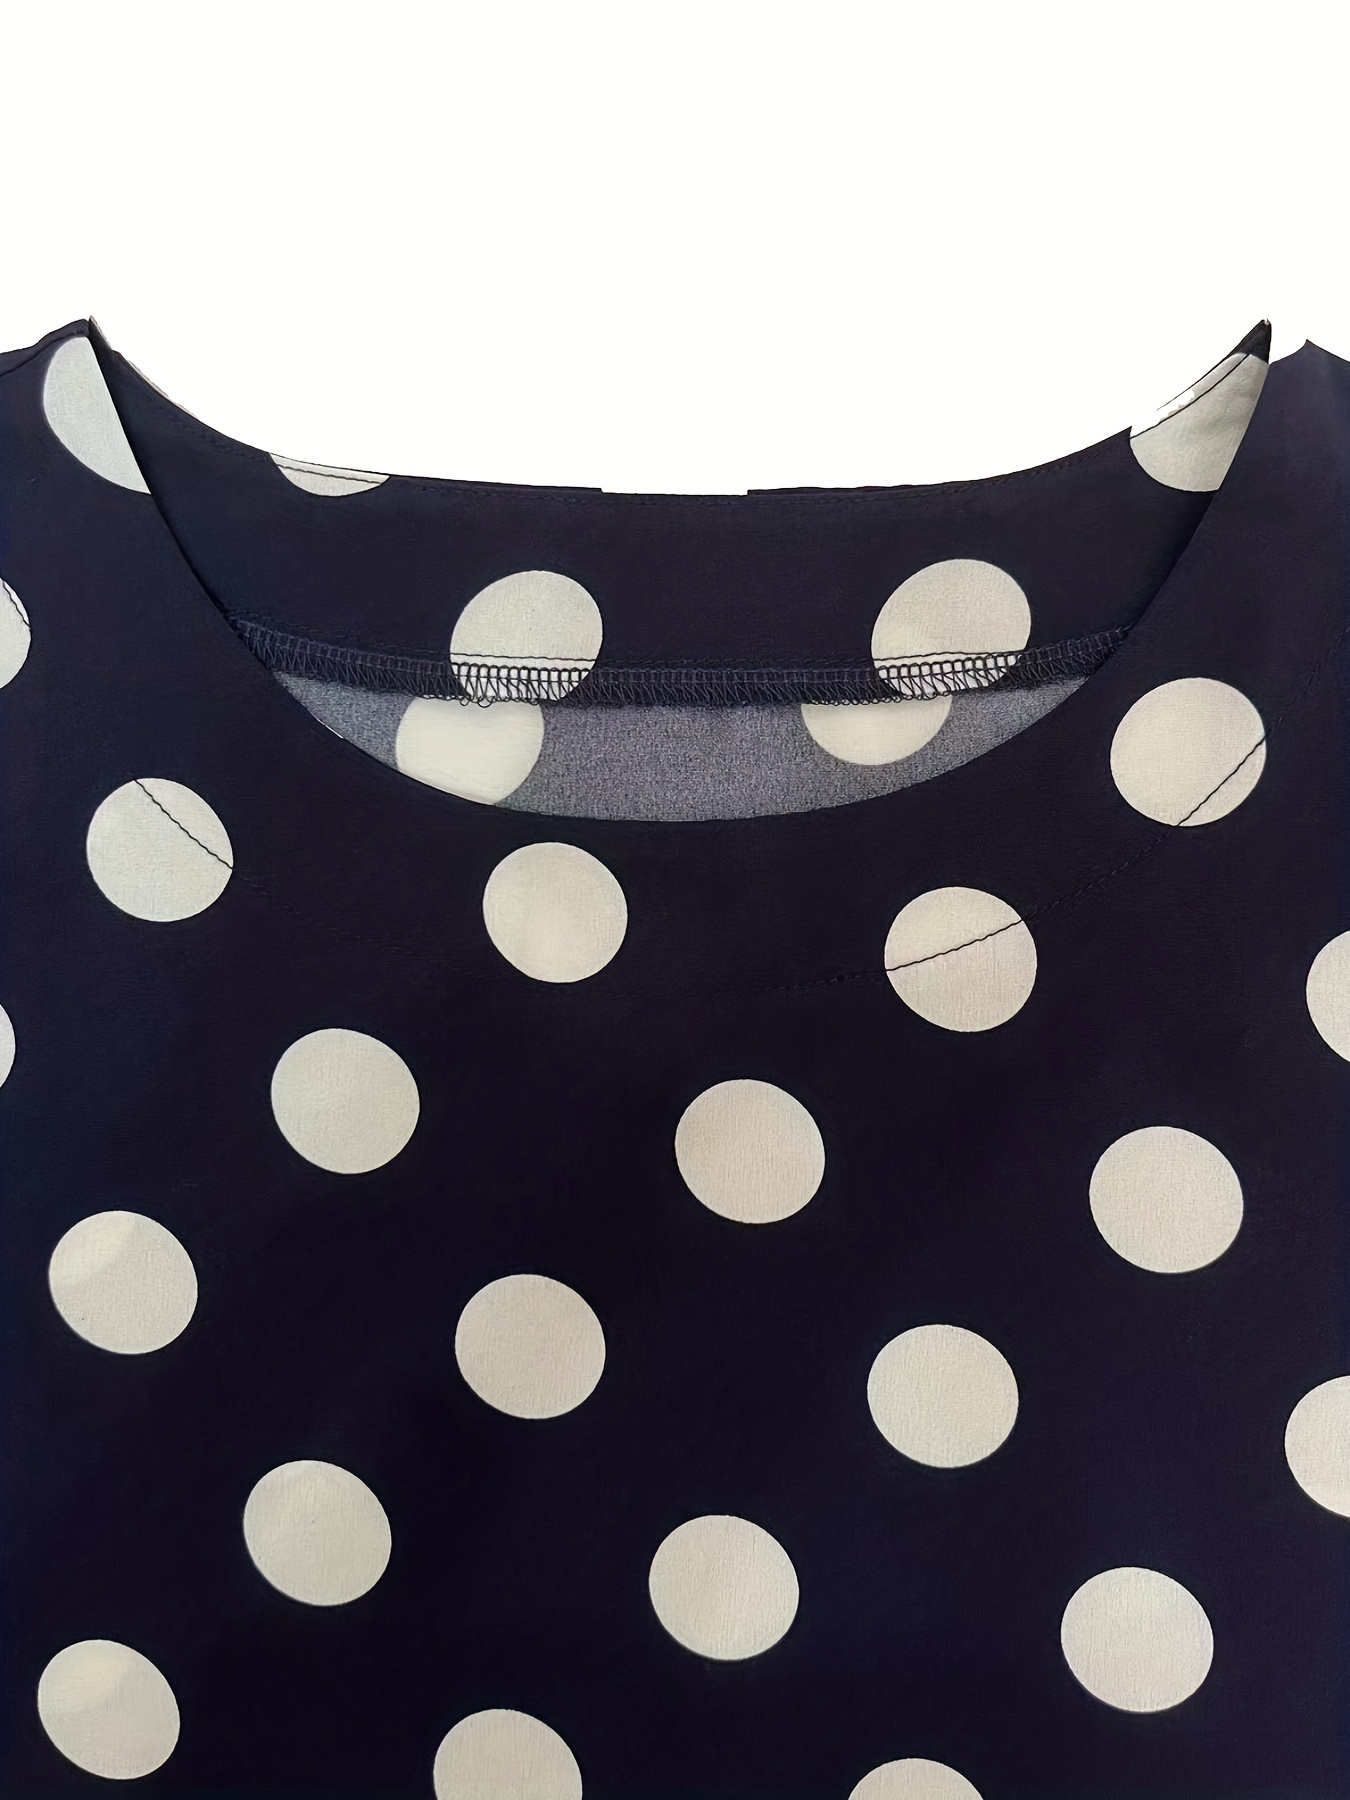 Black and White Polka Dot Shirt  White polka dot shirt, Polka dots outfit, Polka  dot shirt outfit